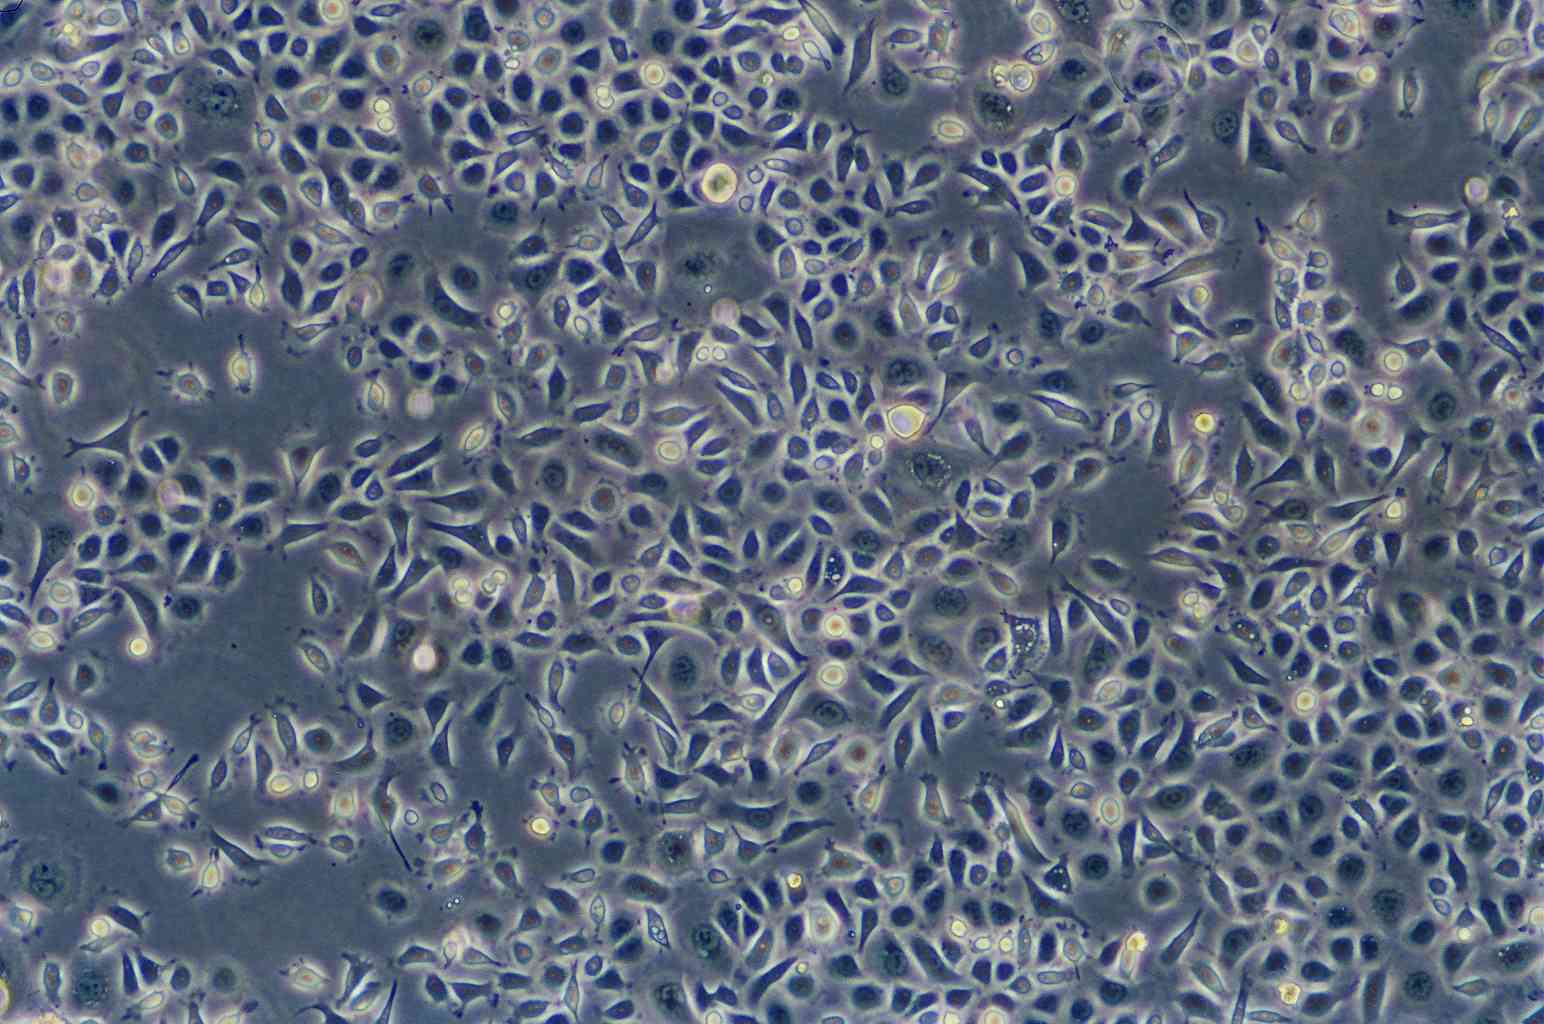 OV-1063:人卵巢上皮细胞癌复苏细胞(提供STR鉴定图谱)